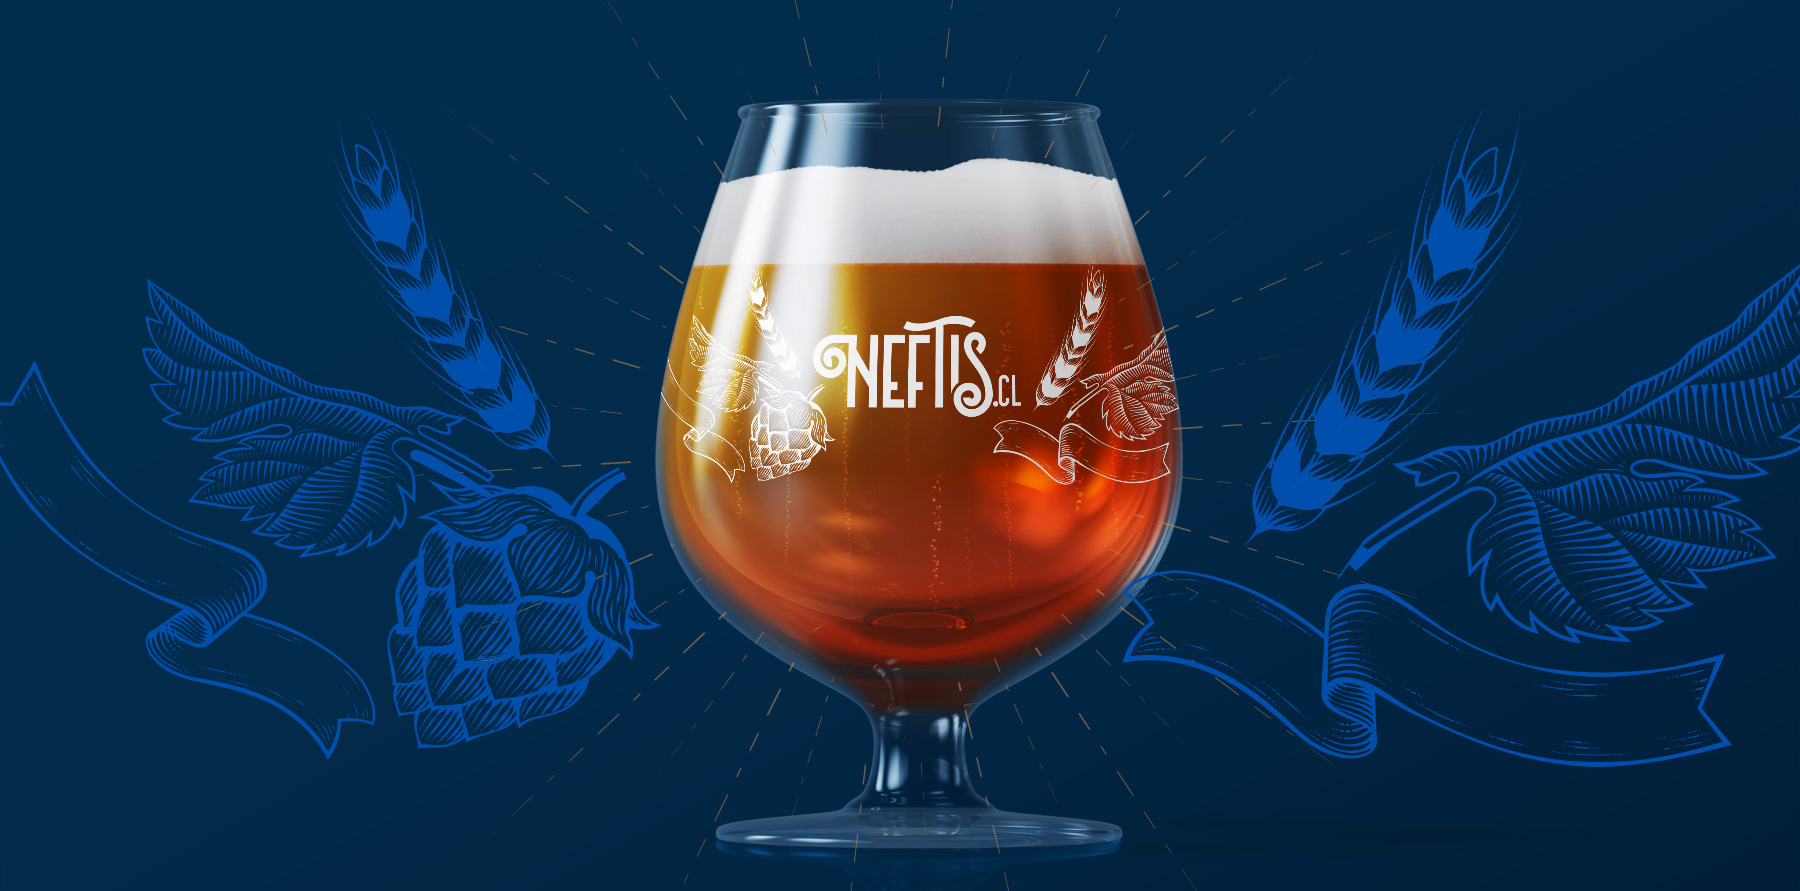 desarrollo de branding para marca de cerveza Neftis desarrollo de sitio web ecommerce sitio web en shopify